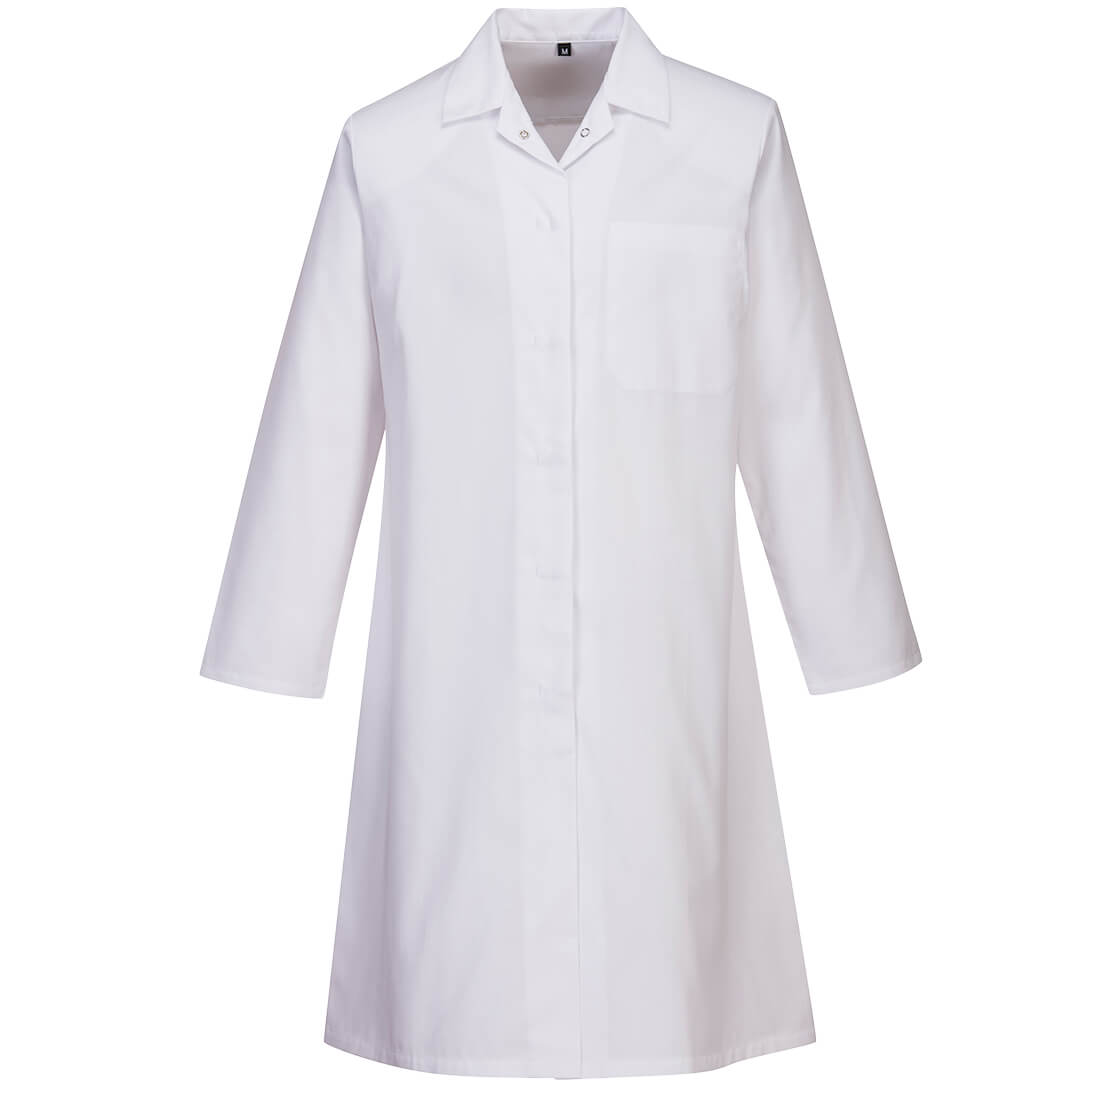 Portwest 2205 - White Ladies Food Industry Coat, One Pocket sz Large Regular Apron jacket